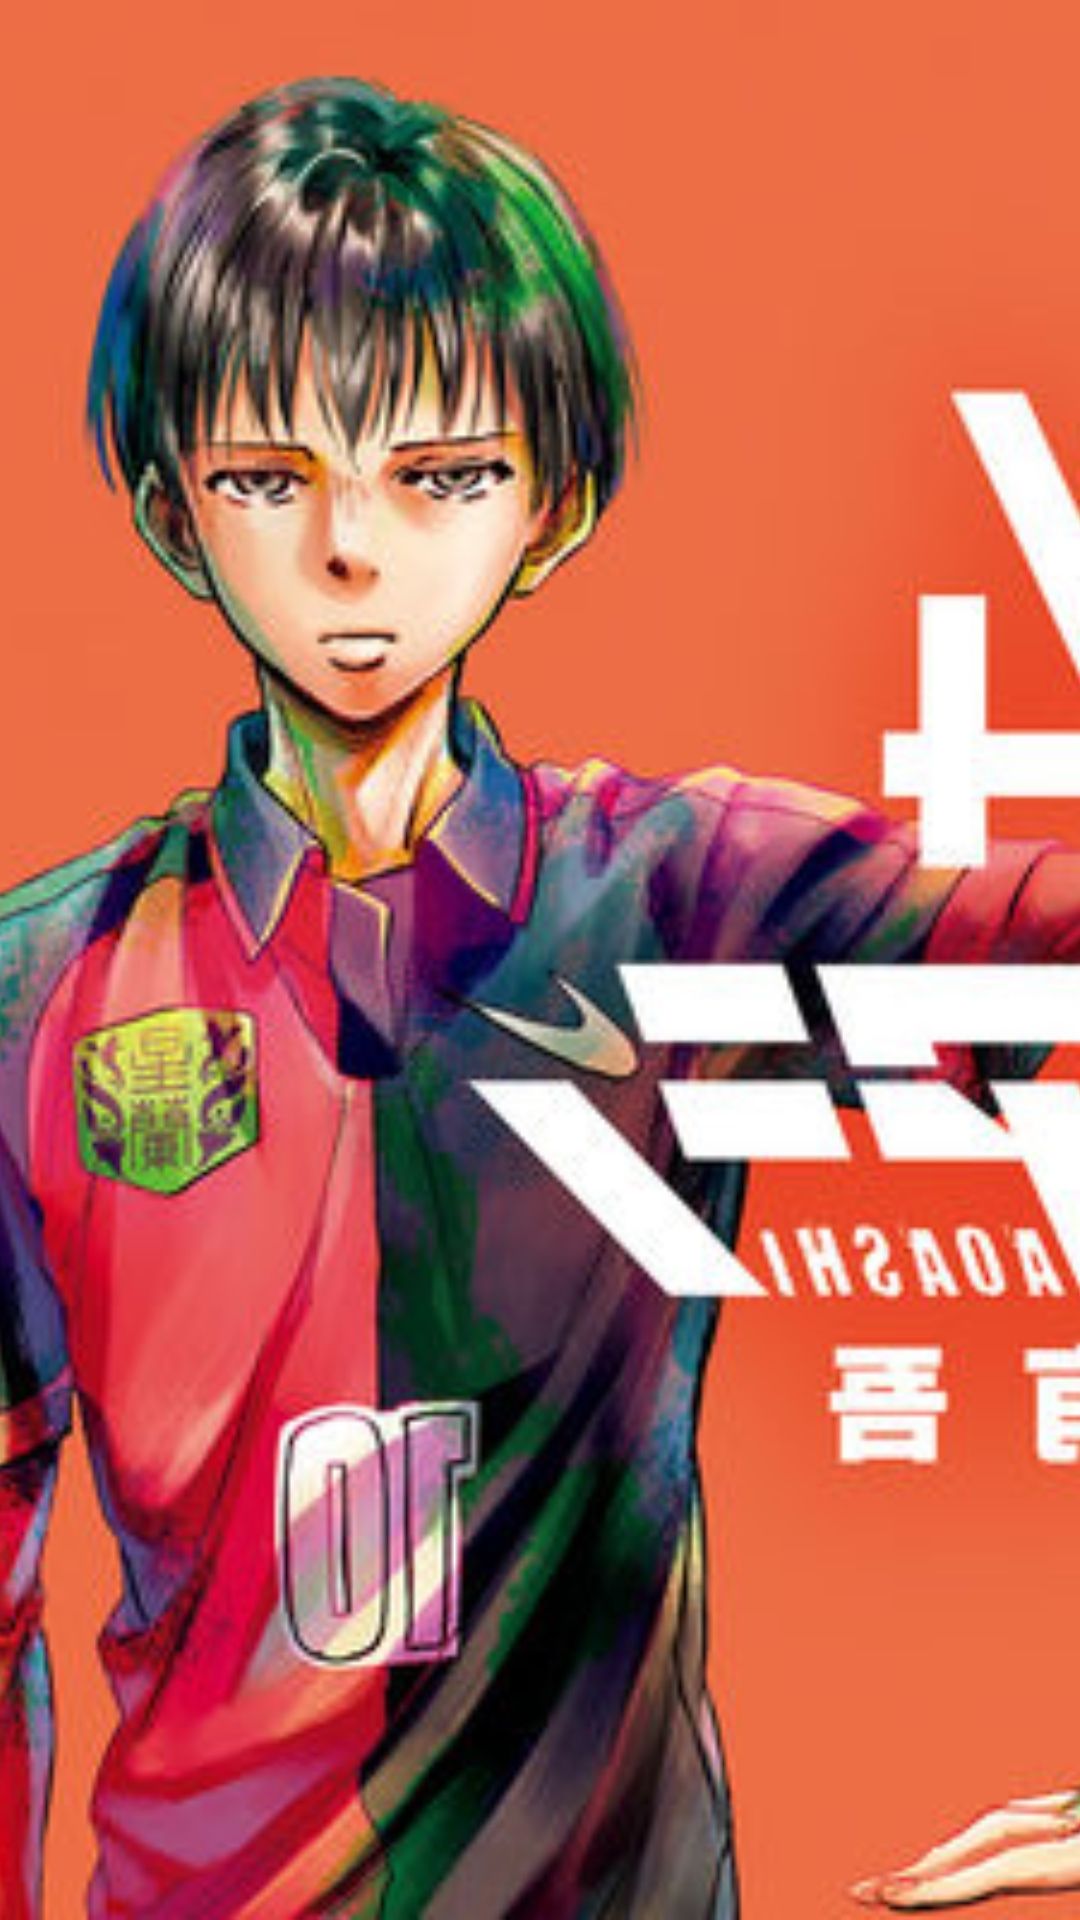 Yugo Kobayashi’s SoccerThemed Manga Aoashi Gets Anime